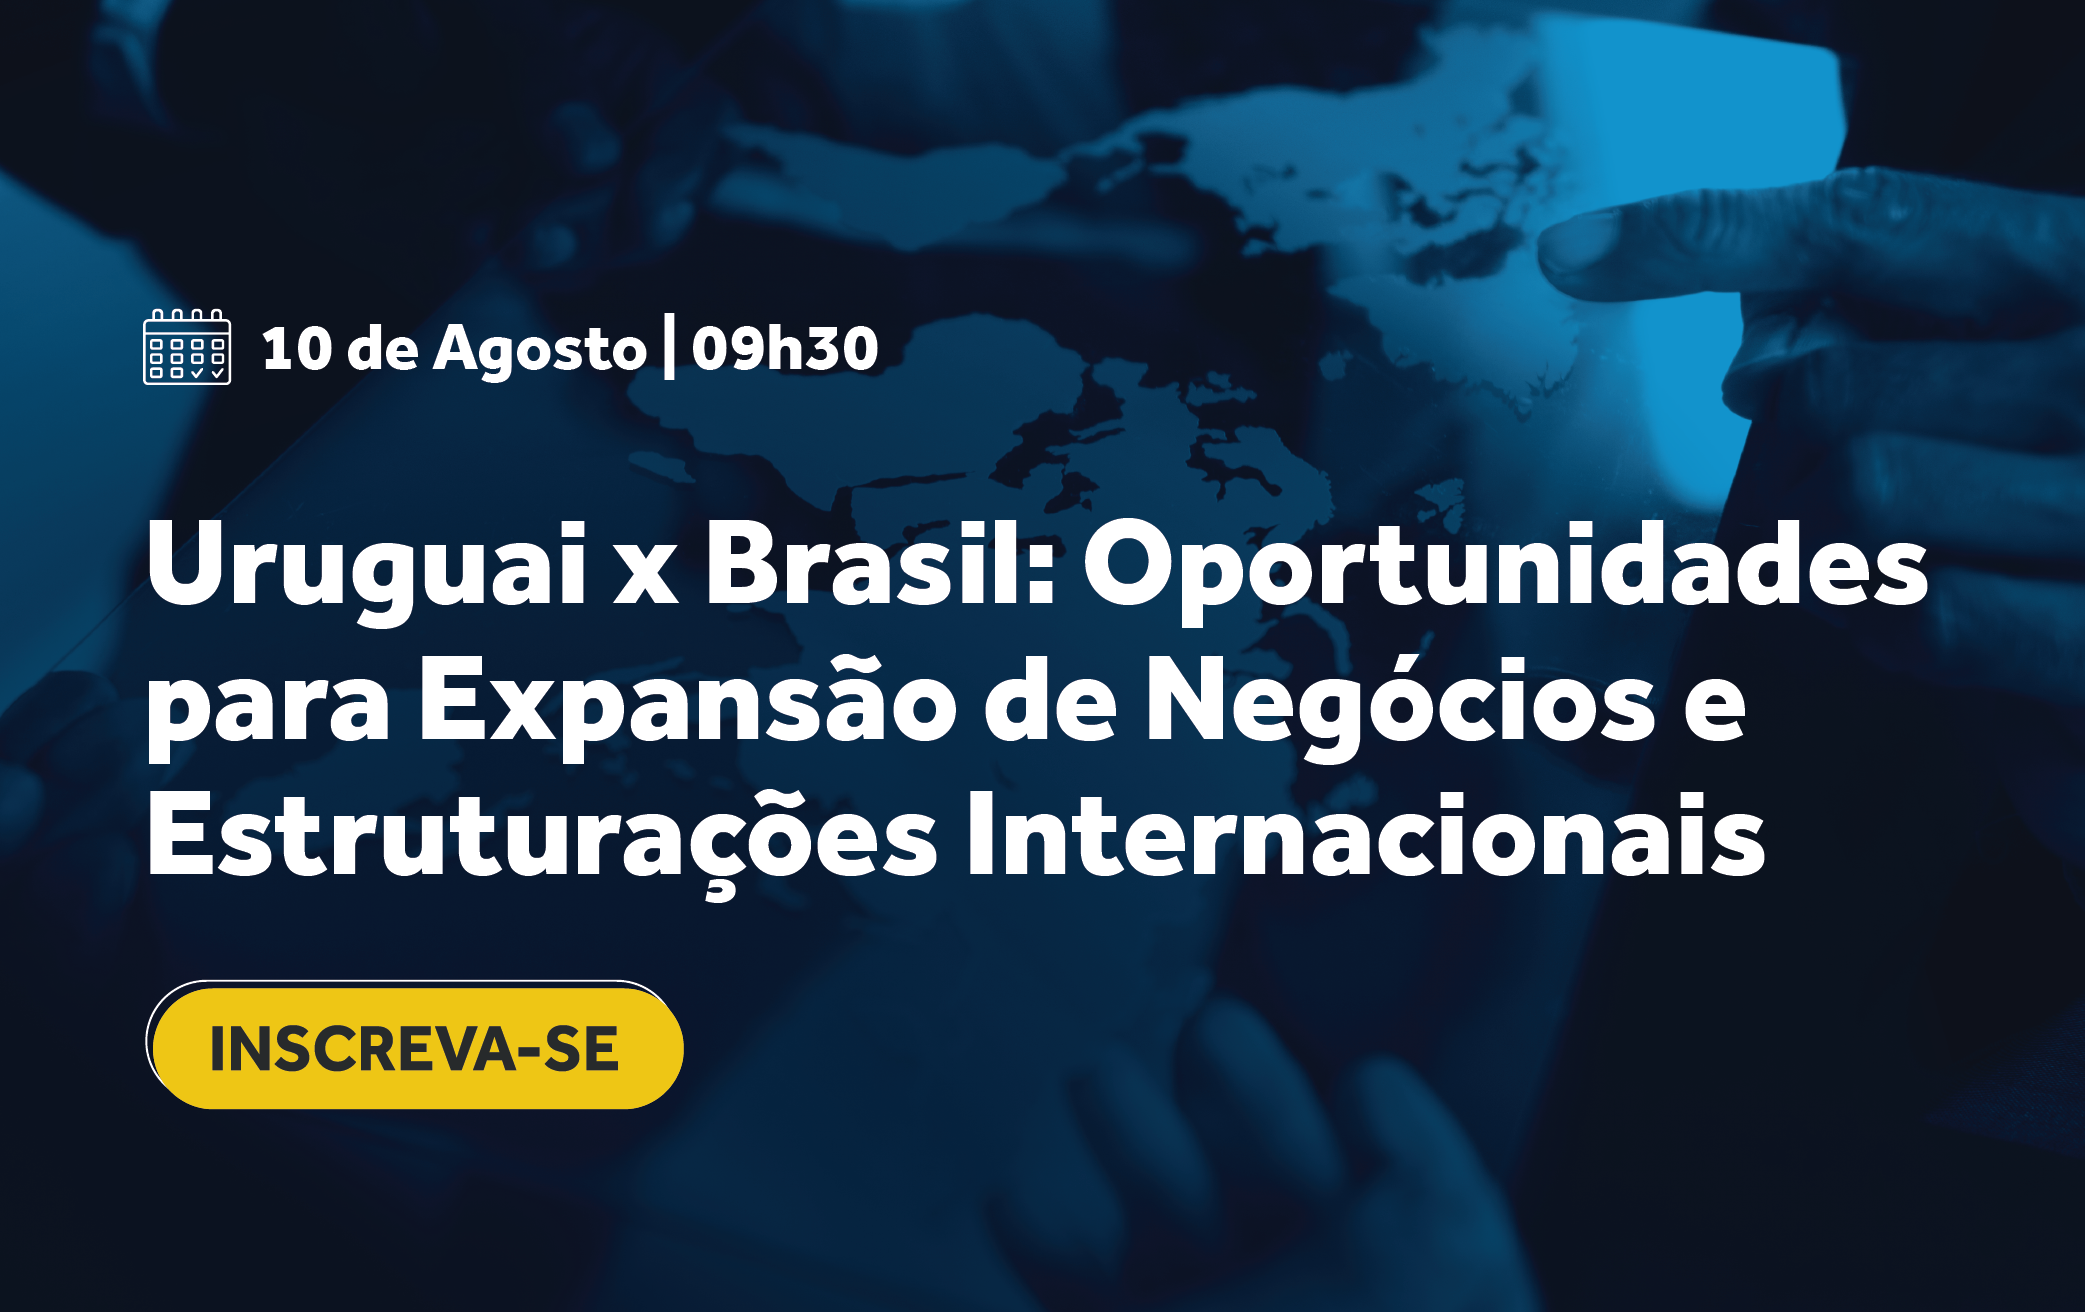 URUGUAI X BRASIL: OPORTUNIDADES PARA EXPANSÃO DE NEGÓCIOS E ESTRUTURAÇÕES INTERNACIONAIS